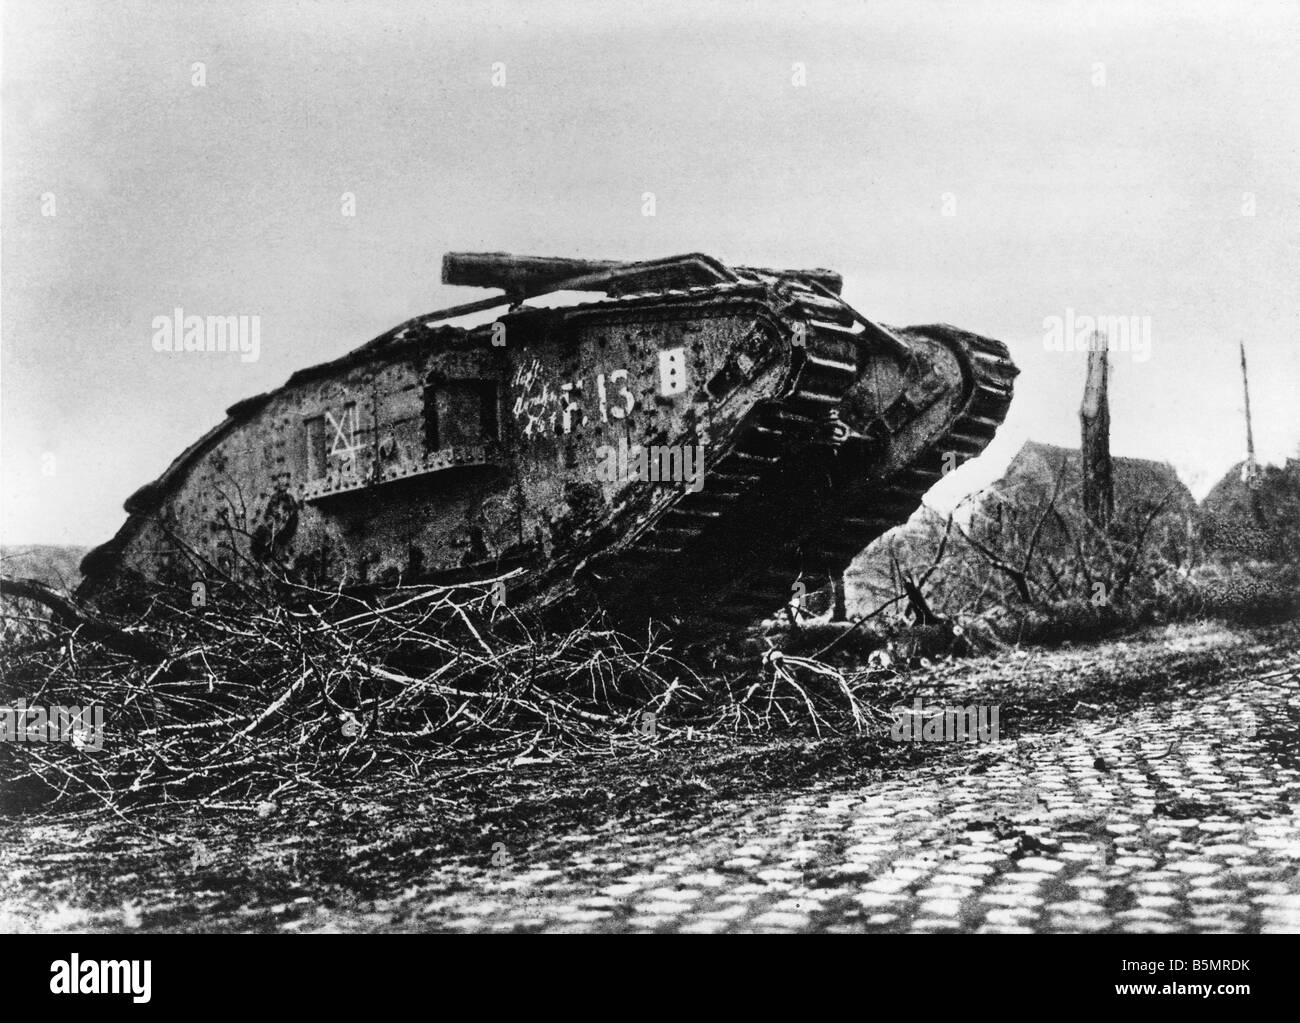 9 1917 11 20 A2 1 e Serbatoio battaglia di Cambrai serbatoio inglese Guerra Mondiale uno occidentale serbatoio anteriore battaglia di Cambrai 20 29 NOVEMBRE 1917 UNA Foto Stock